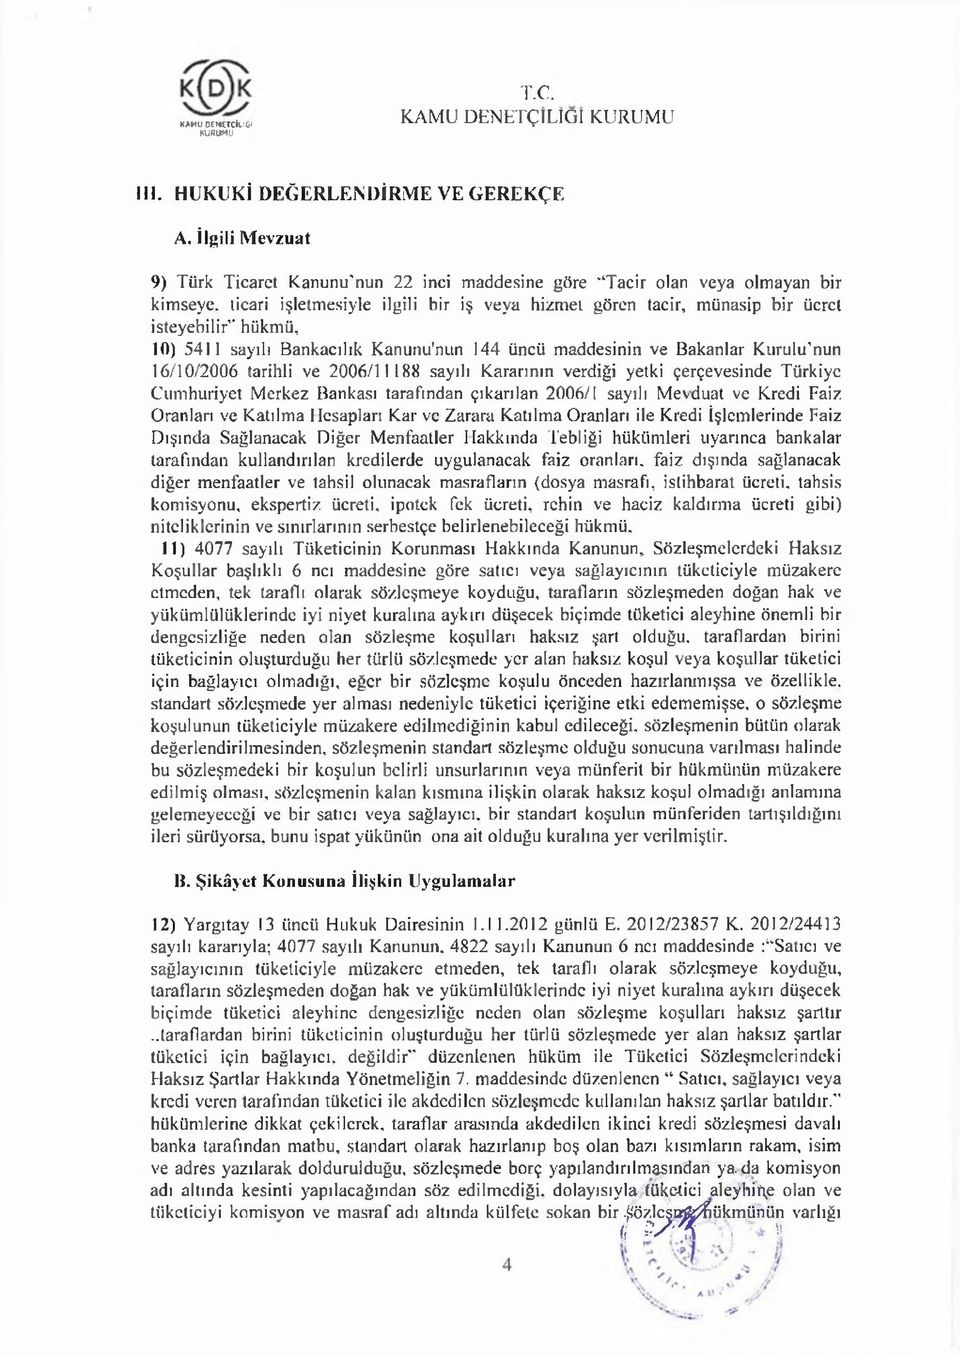 10) 5411 sayılı Bankacılık Kanunu'nun 144 üncü maddesinin ve Bakanlar Kurulıfnun 16/10/2006 tarihli ve 2006/11188 sayılı Kararının verdiği yetki çerçevesinde Türkiye Cumhuriyet Merkez Bankası